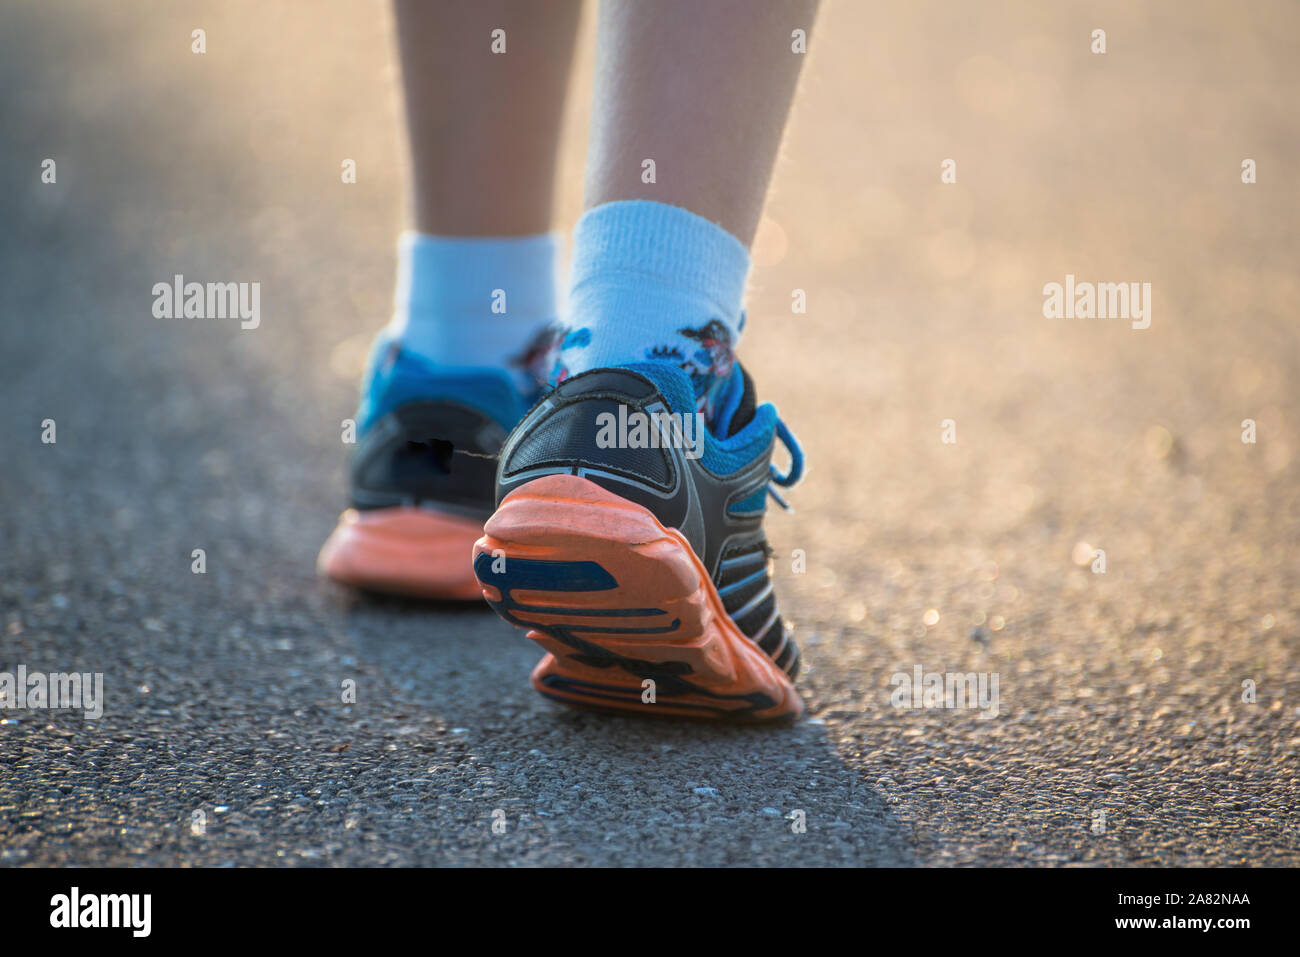 Balades pour enfants, l'exercice sur une route rurale, Close up sur les jeunes pieds portant des chaussures de sport Banque D'Images